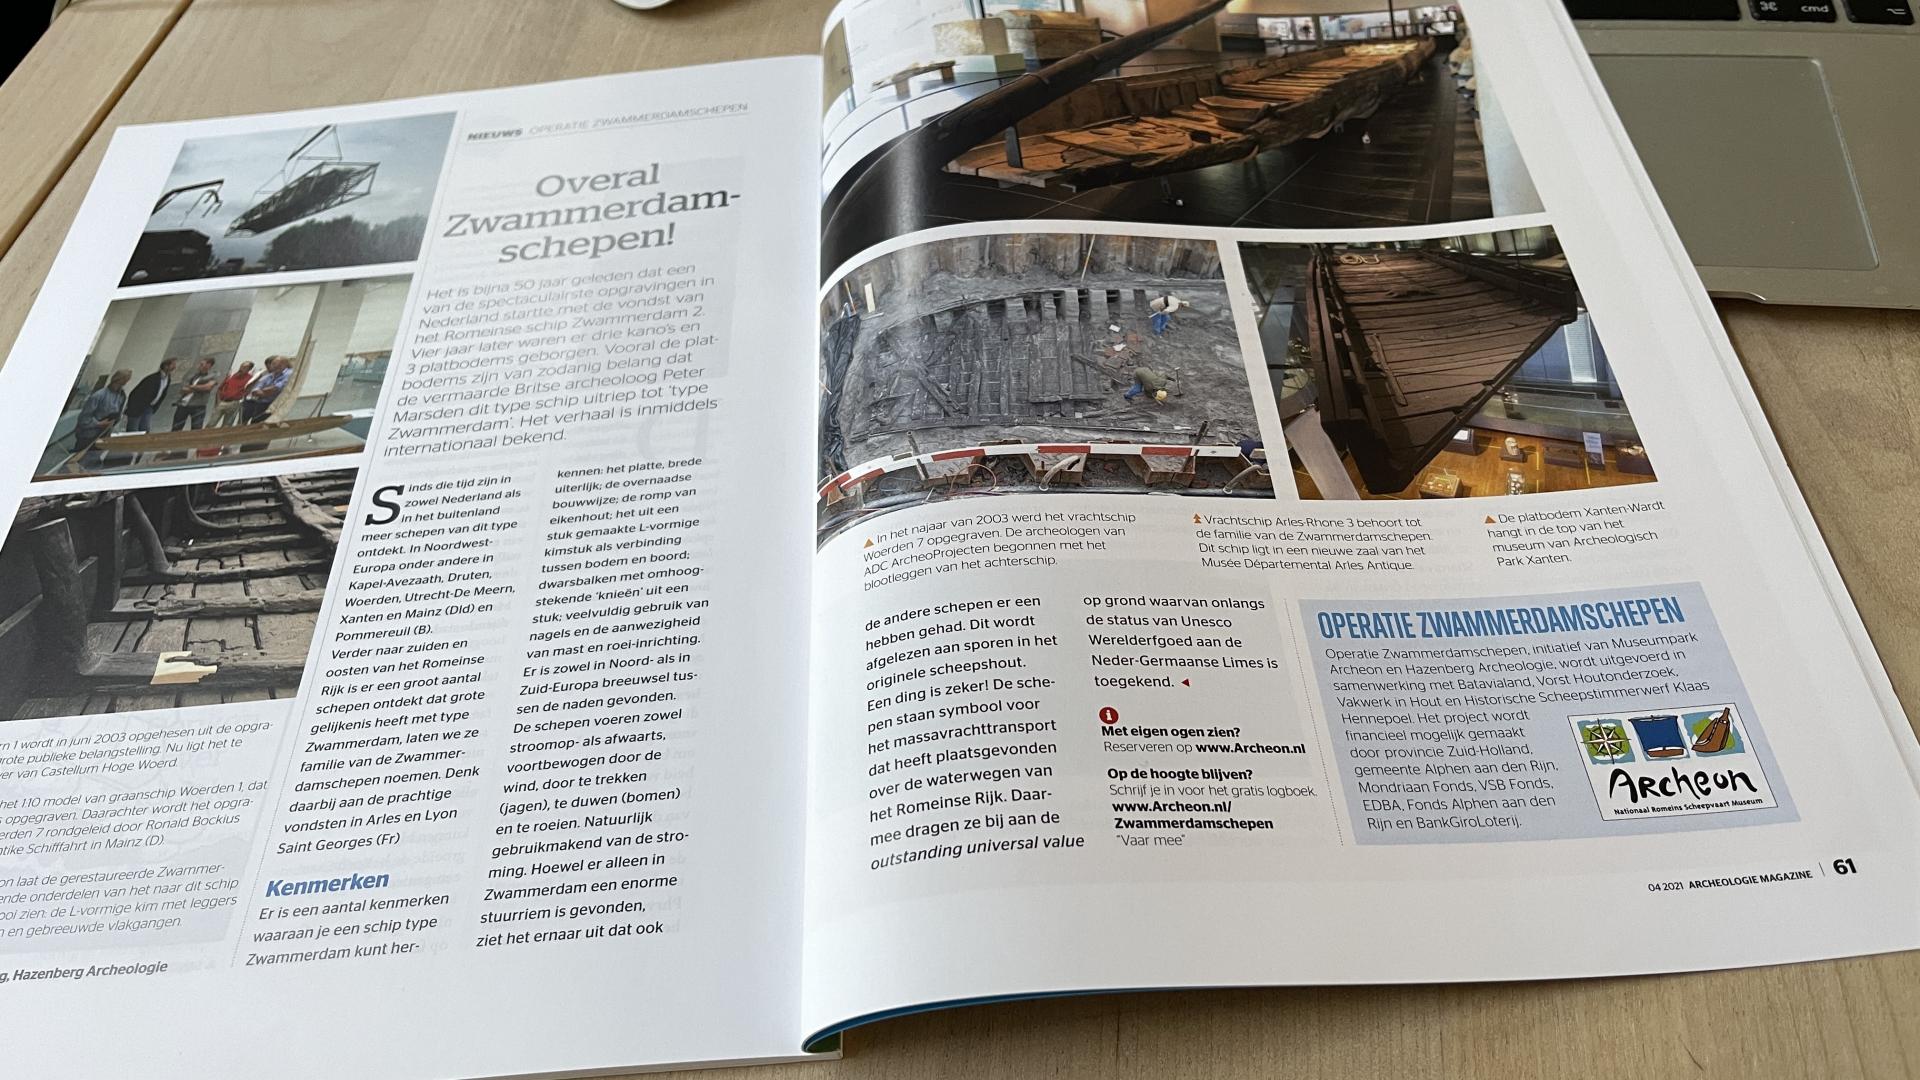 Archeologie Magazine: Overal Zwammerdamschepen